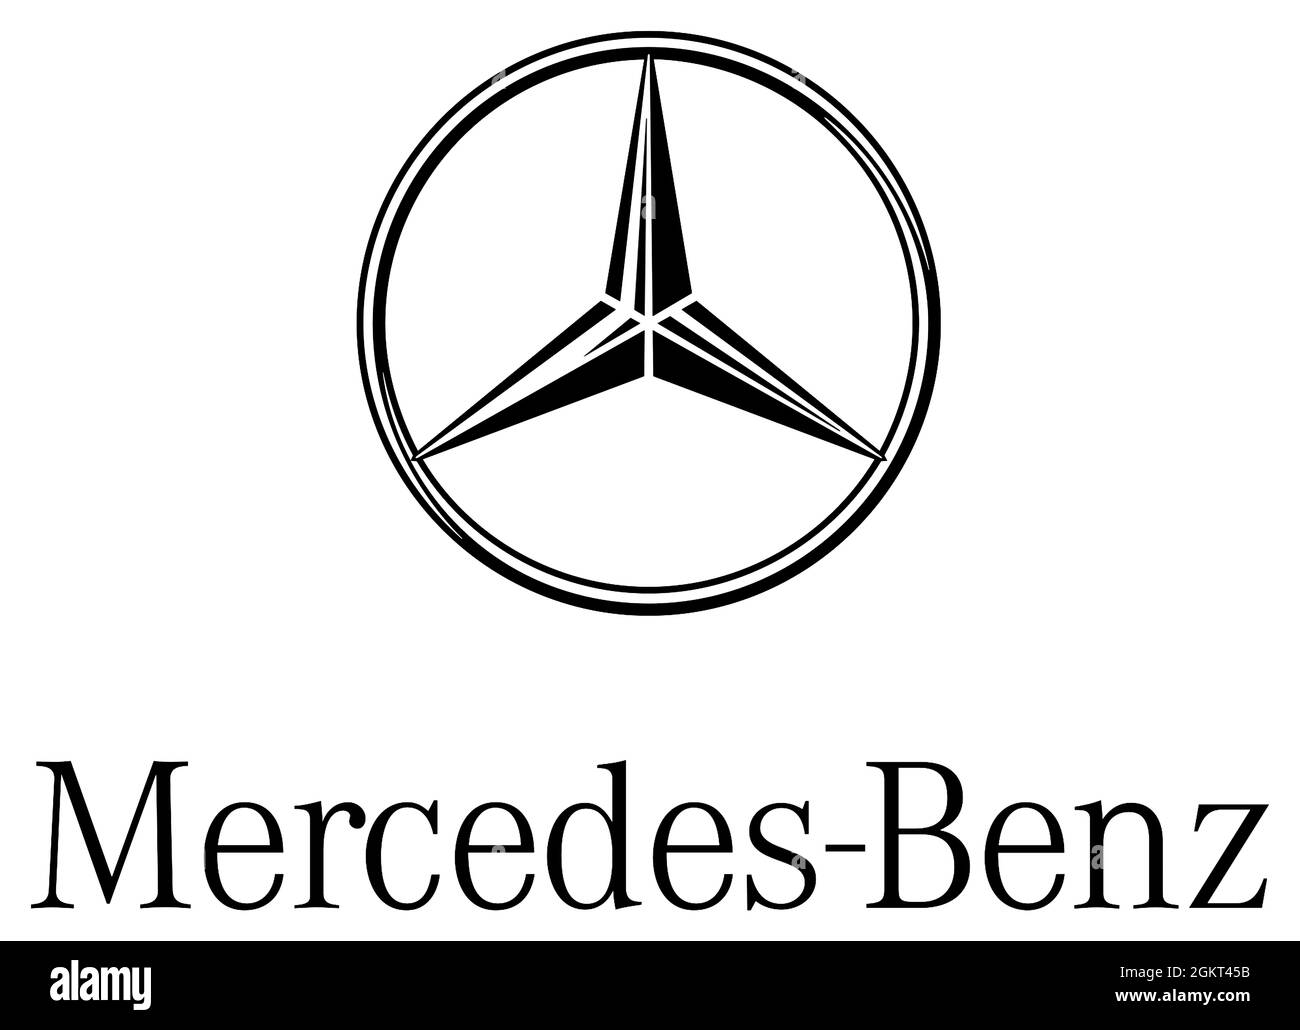 Logotipo de la marca del coche Mercedes-Benz del grupo alemán de automóviles Daimler AG con sede en Stuttgart - Alemania. Foto de stock